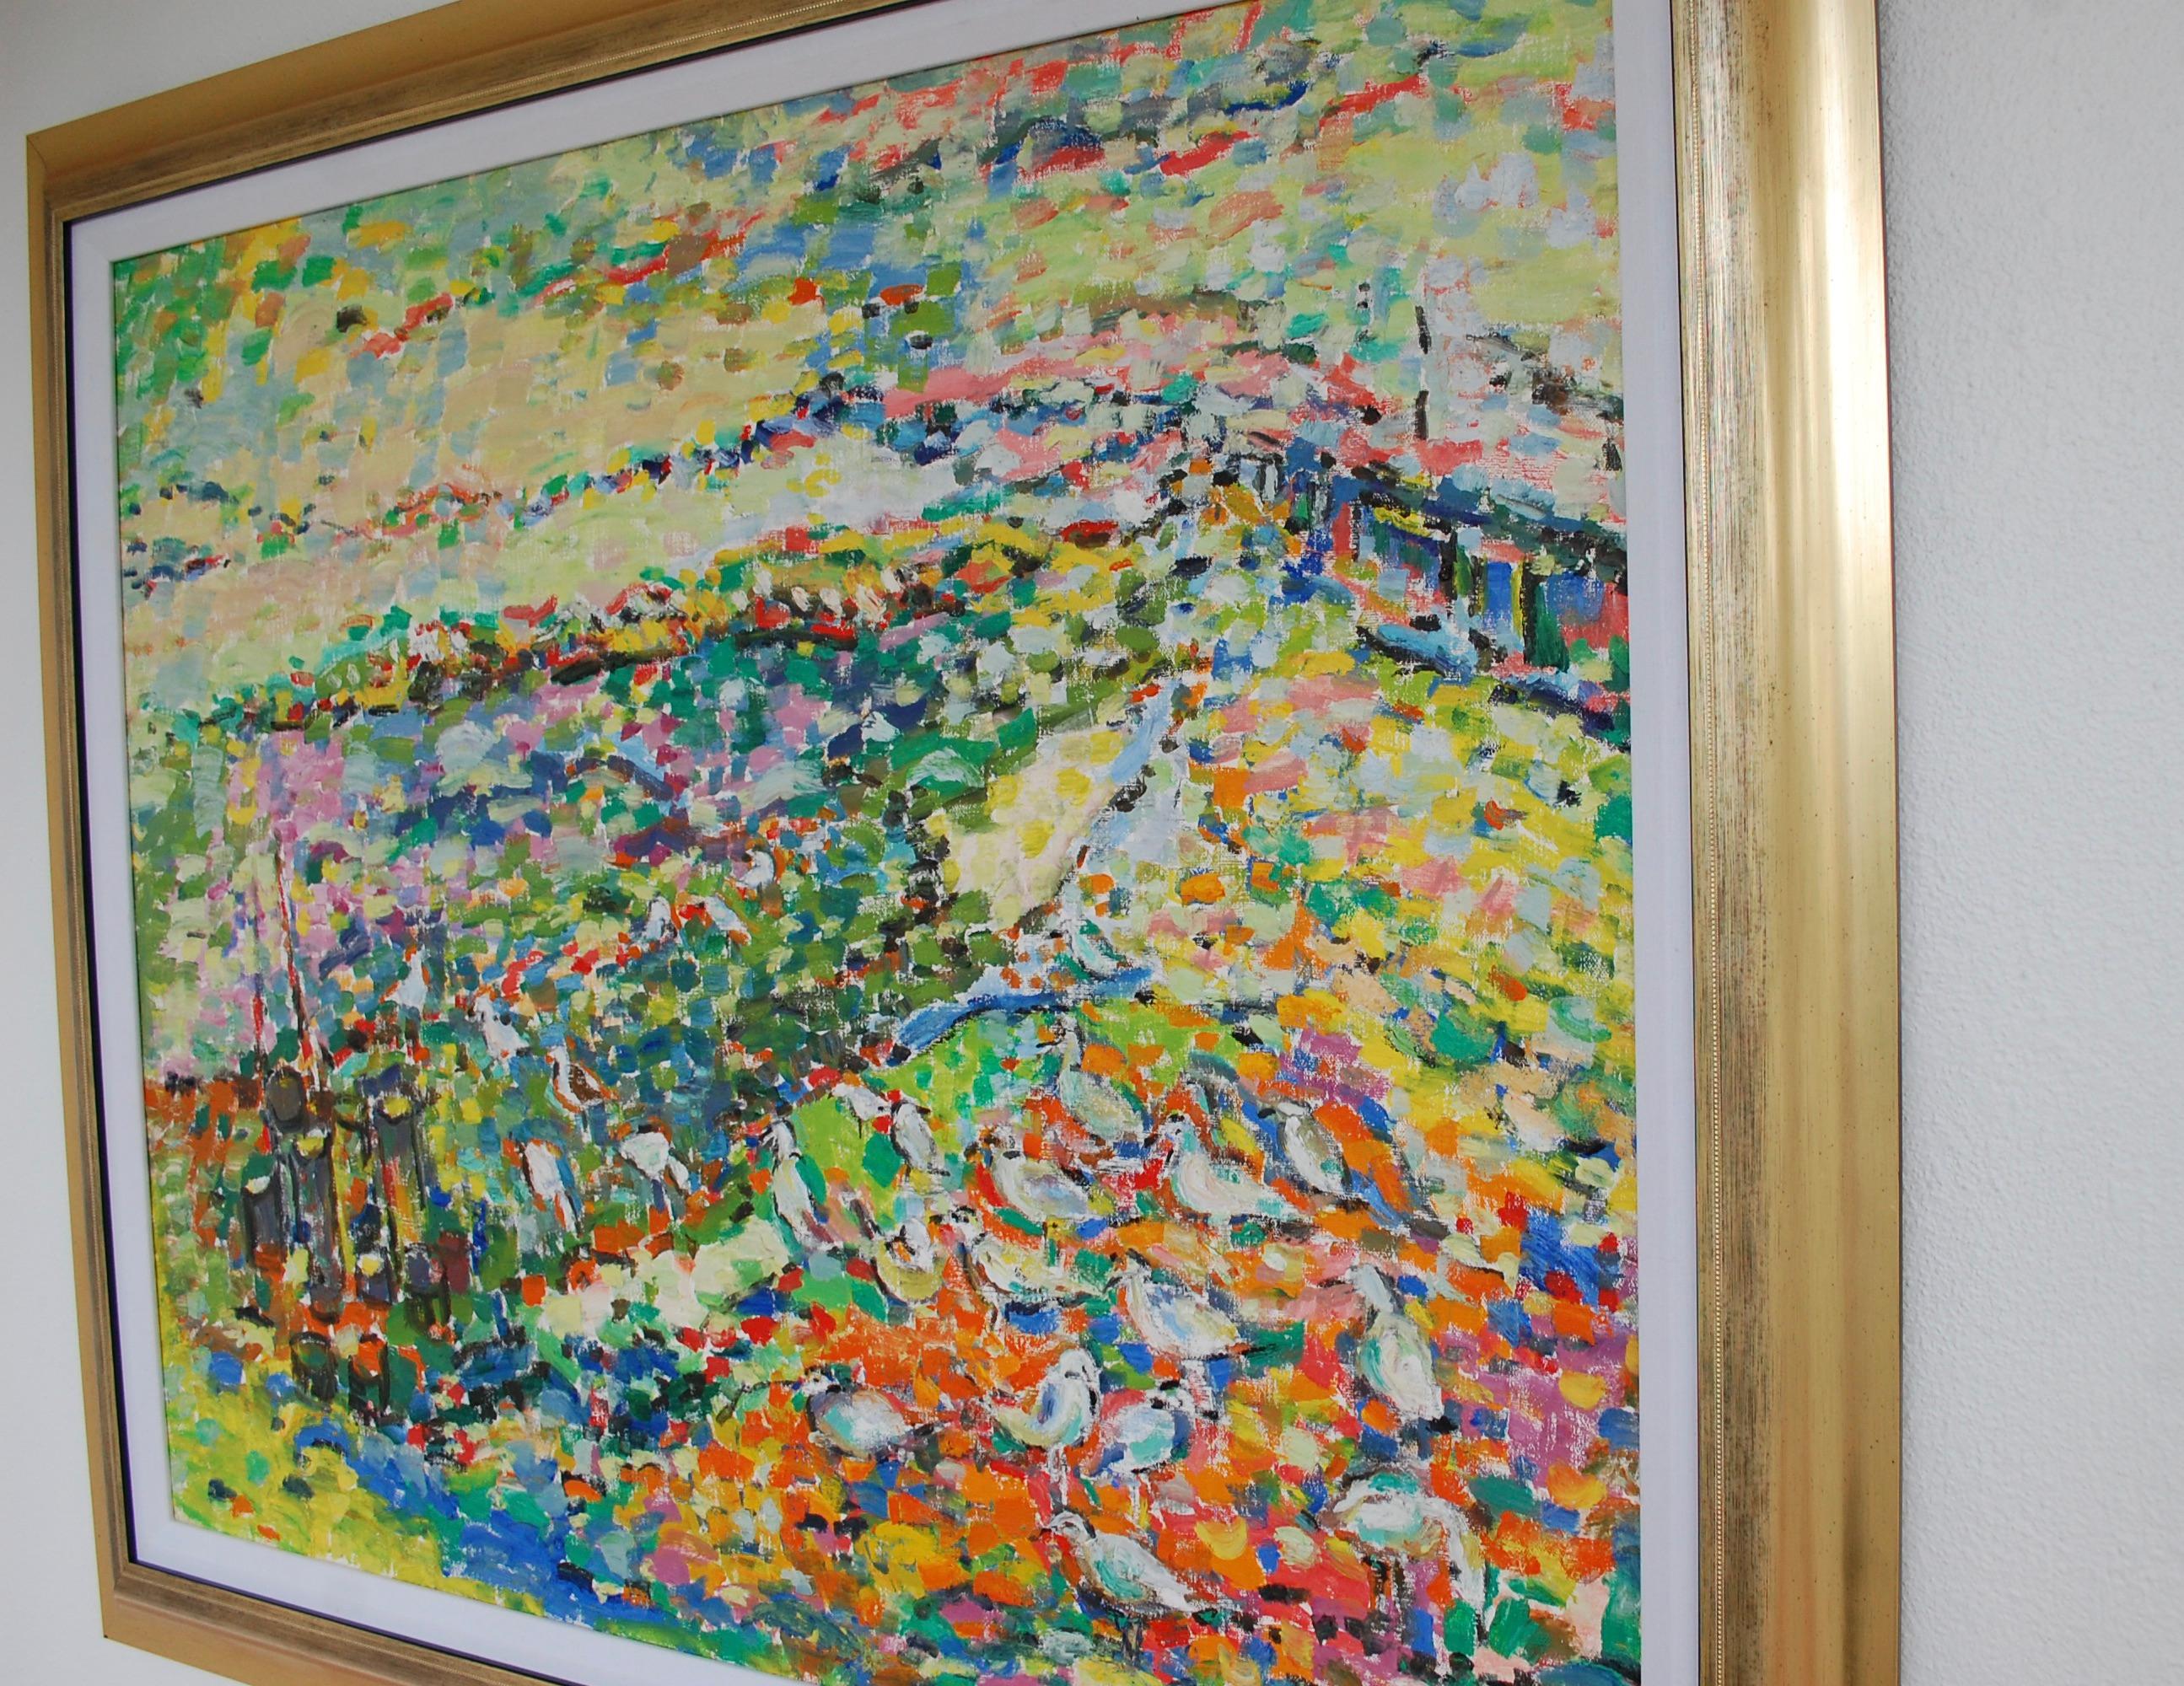 Möwen am Ufer 
Lebendiger abstrakter Impressionist.
Künstler versengt unten rechts.
Judith Sobel wurde 1924 in Lwow in Polen geboren. Nach dem Zweiten Weltkrieg besuchte sie die Akademie der Schönen Künste in Lodz, Polen. Dort studierte sie bei den